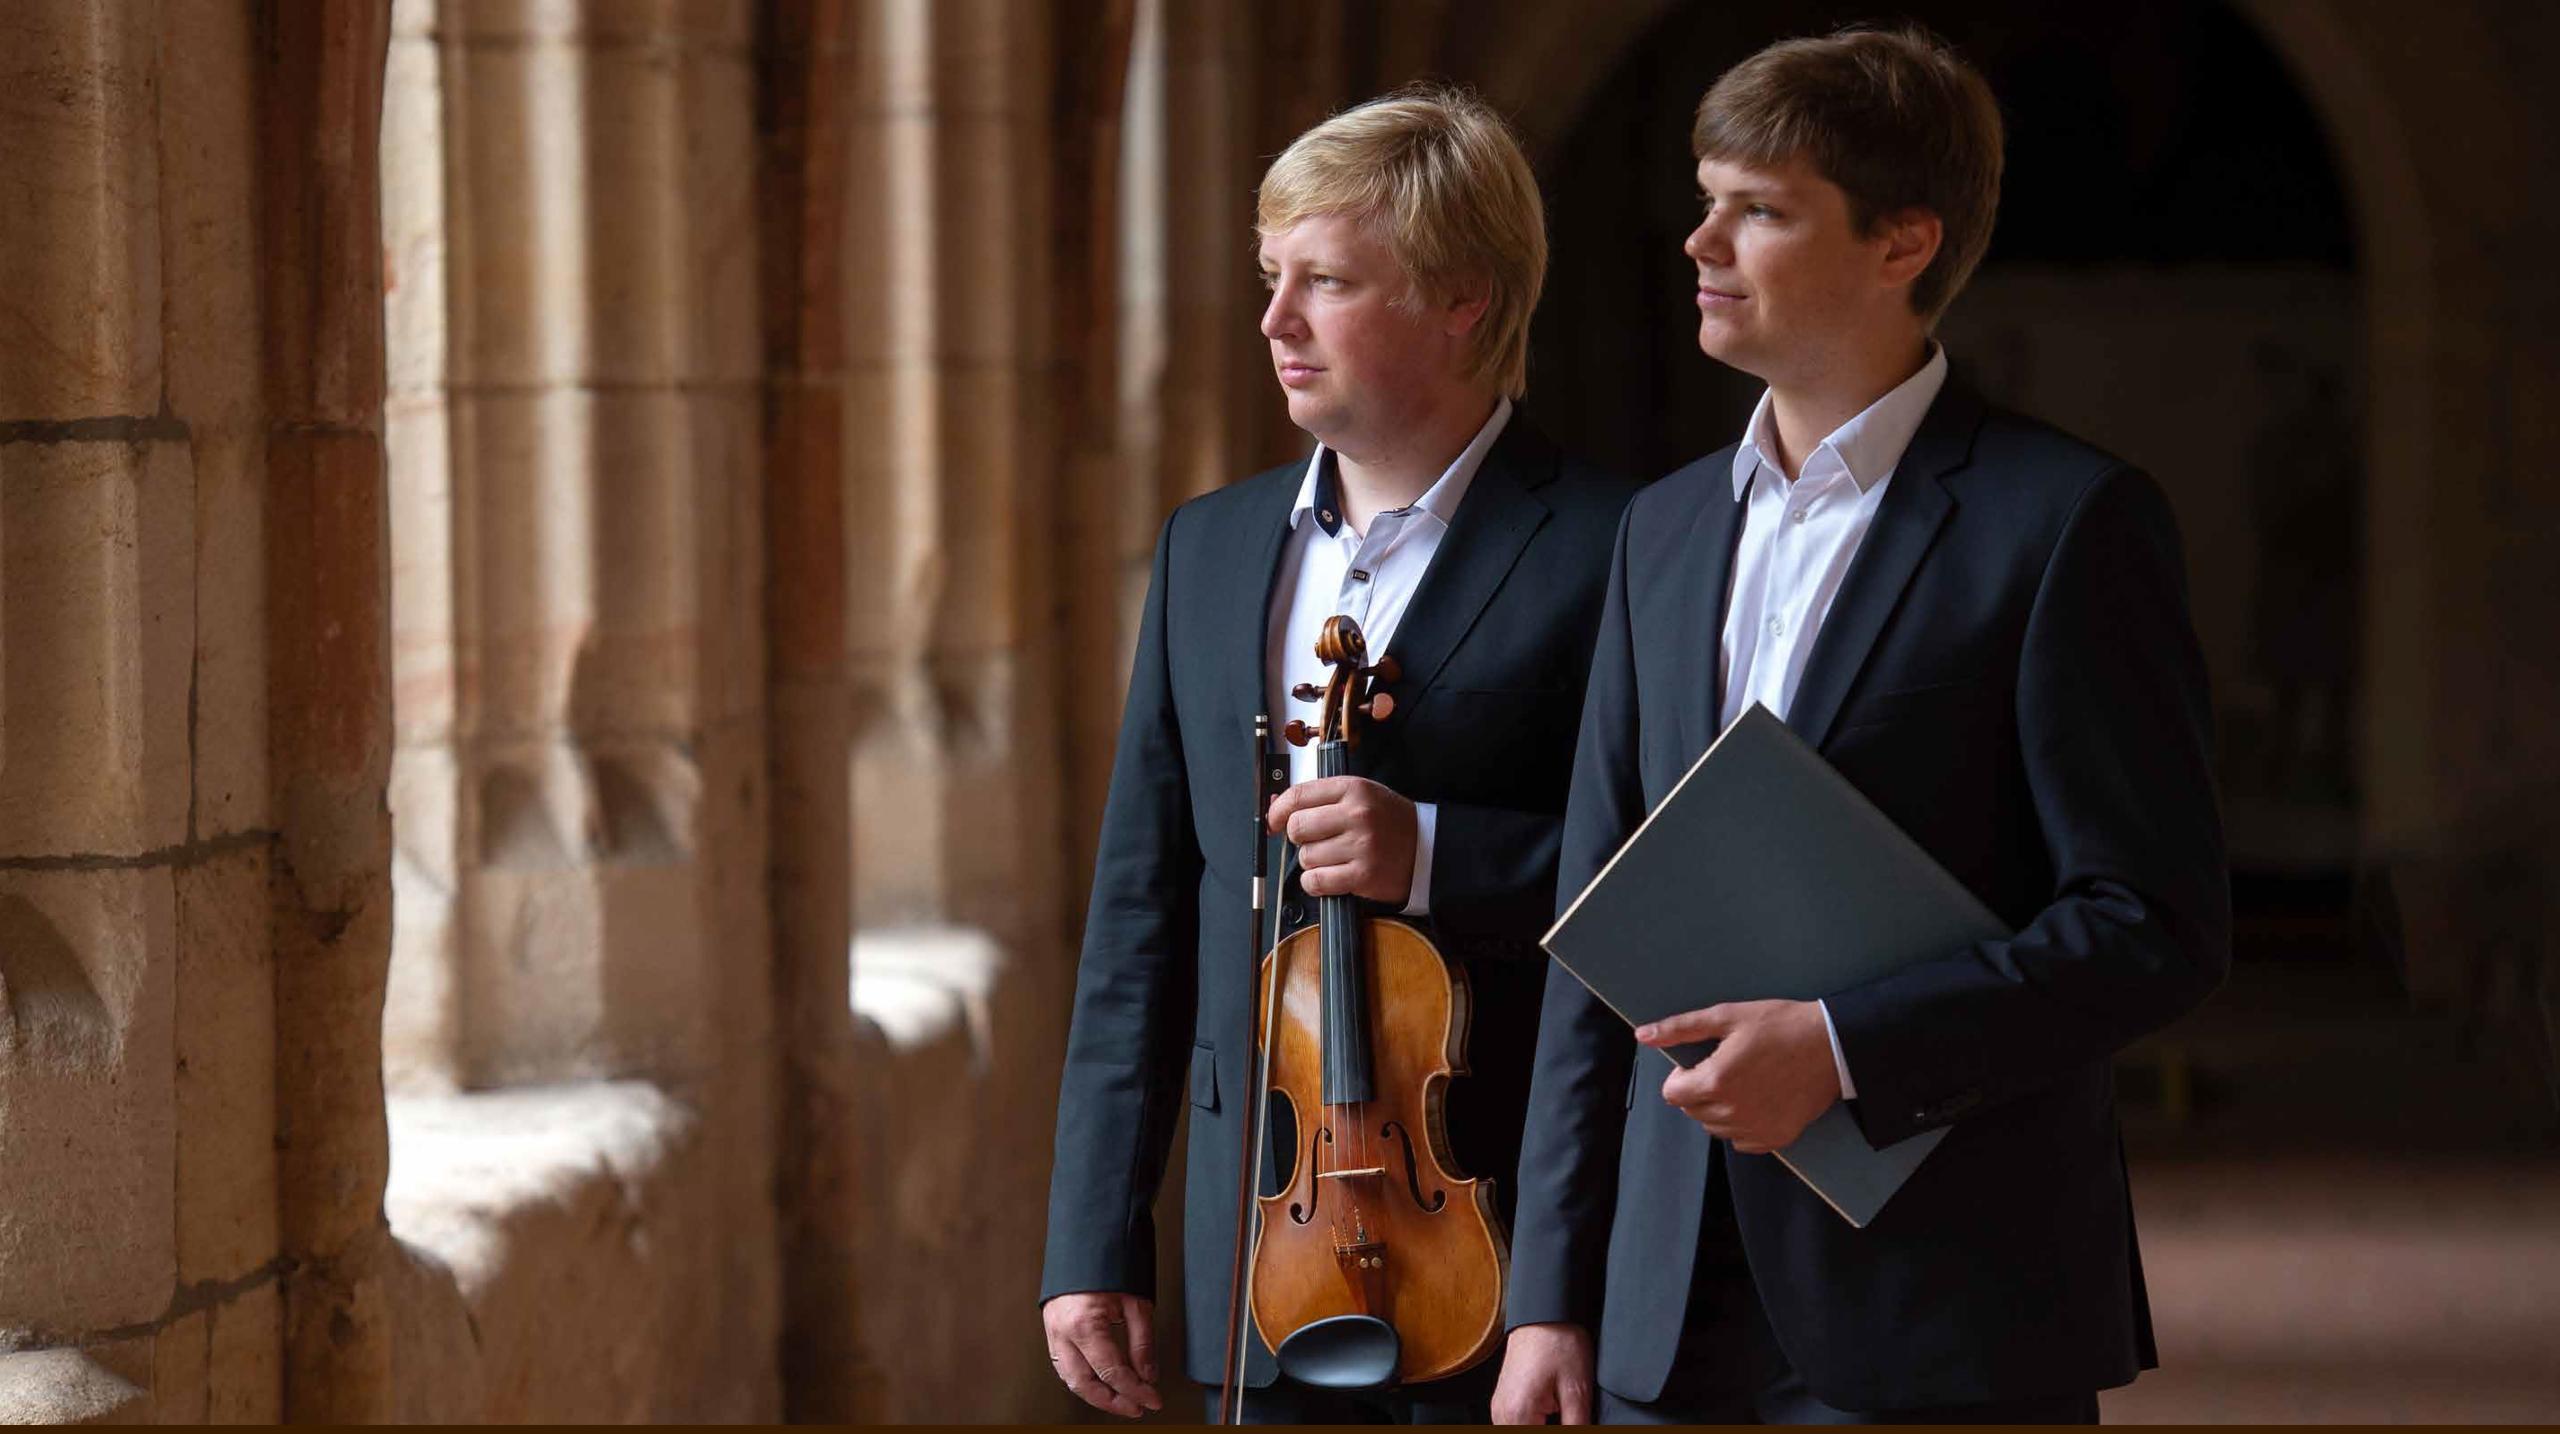 Ein historischer Kreuzgang, zwei junge Musiker in dunklen Anzügen, einer mit Violine, einer mit einem Notenbuch